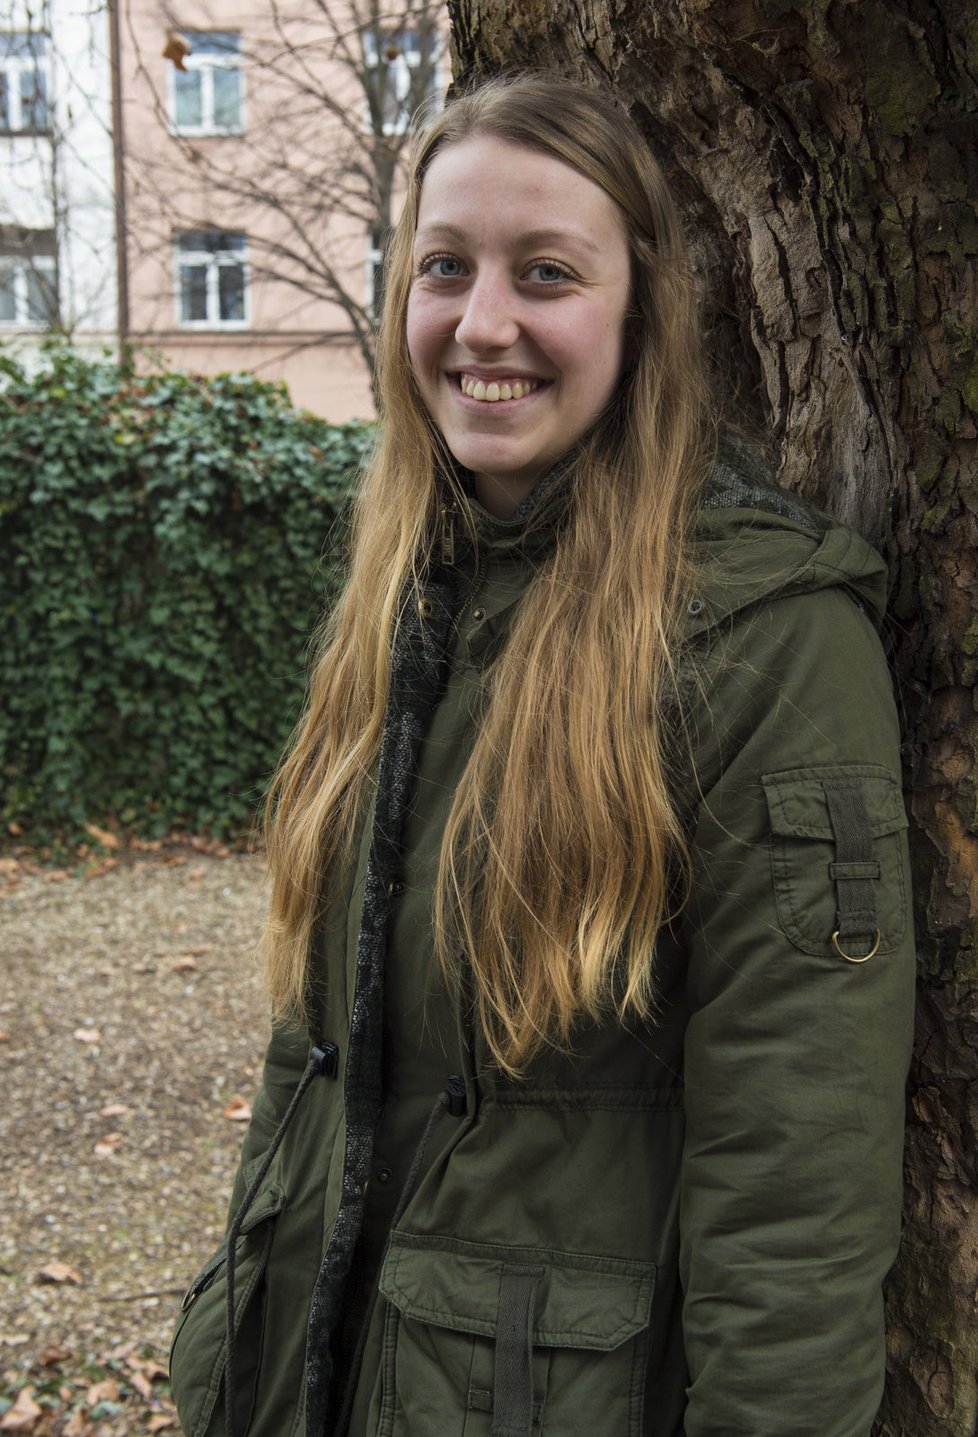 Alice pochází z Třenčína a v Praze už tři roky studuje. Práci pro organizaci LATA bere jako dobrou zkušenost.